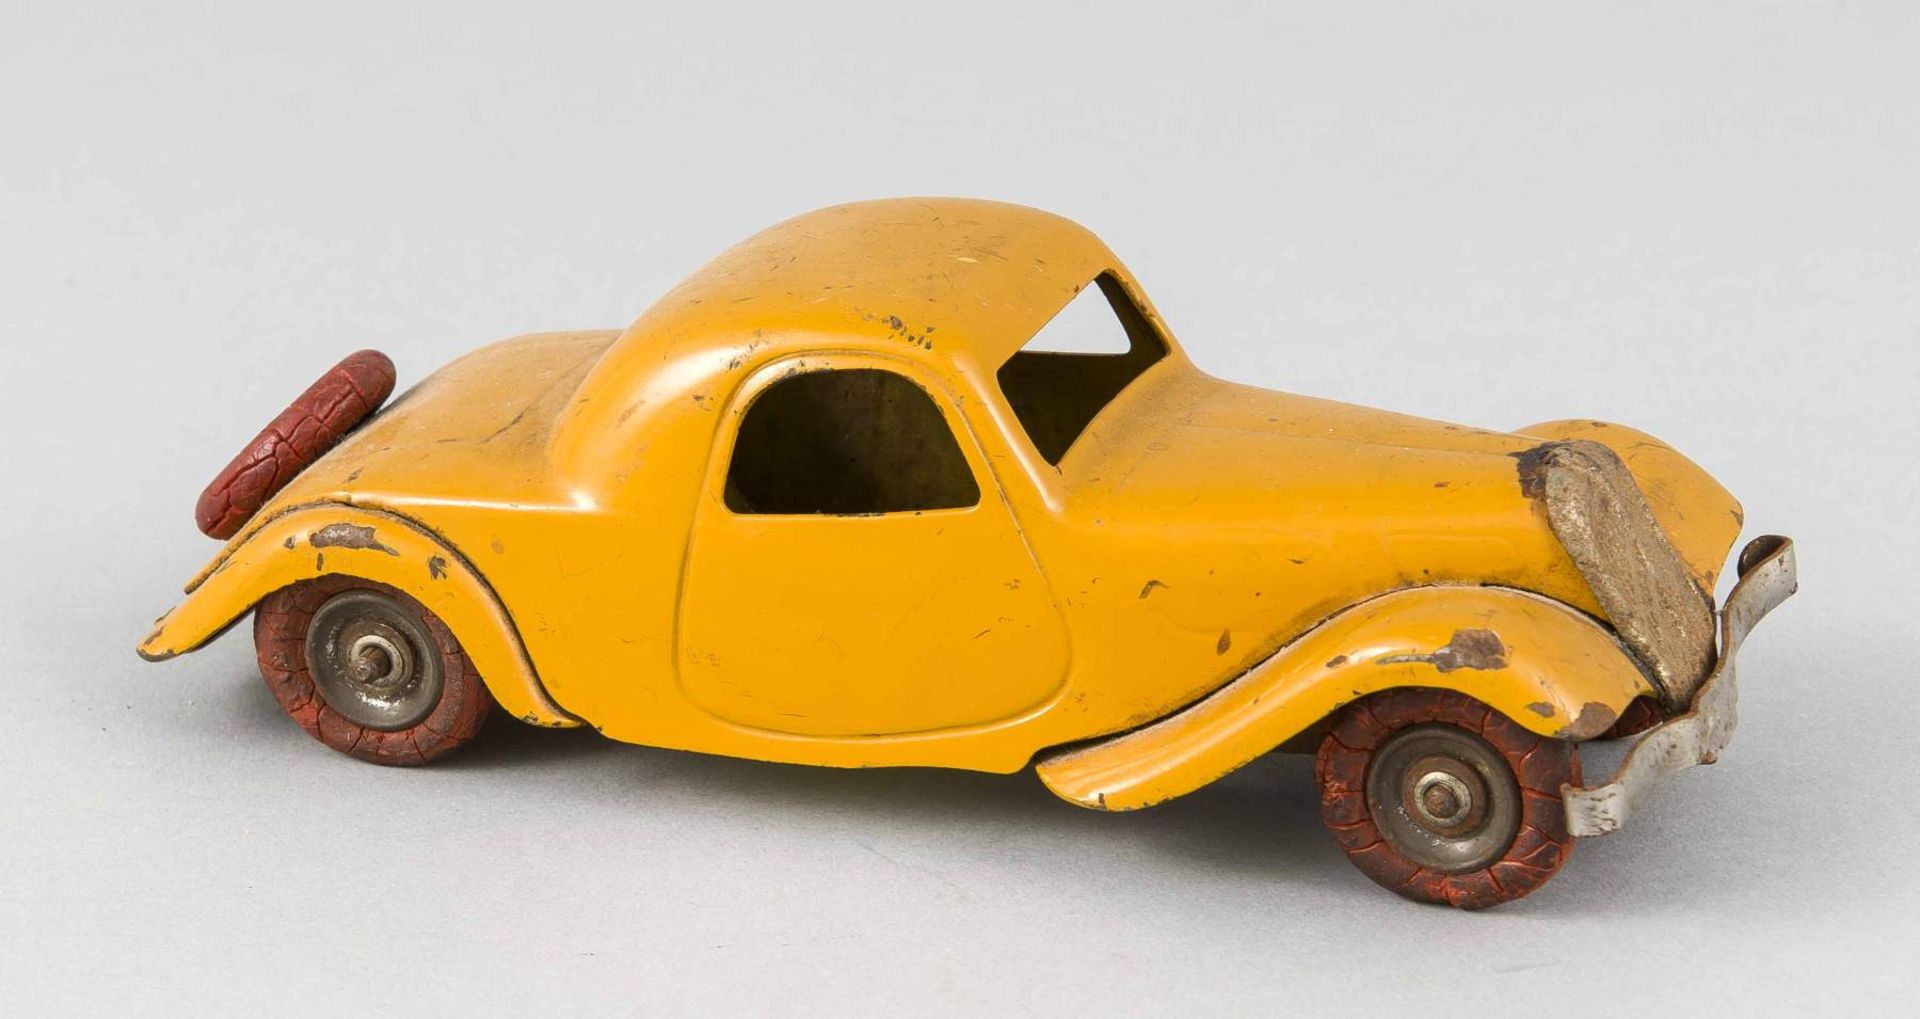 Pierre Brices erstes Auto: Citroen, Metall mit gelber Lackierung, Aufziehfahrzeug mitGummireifen,